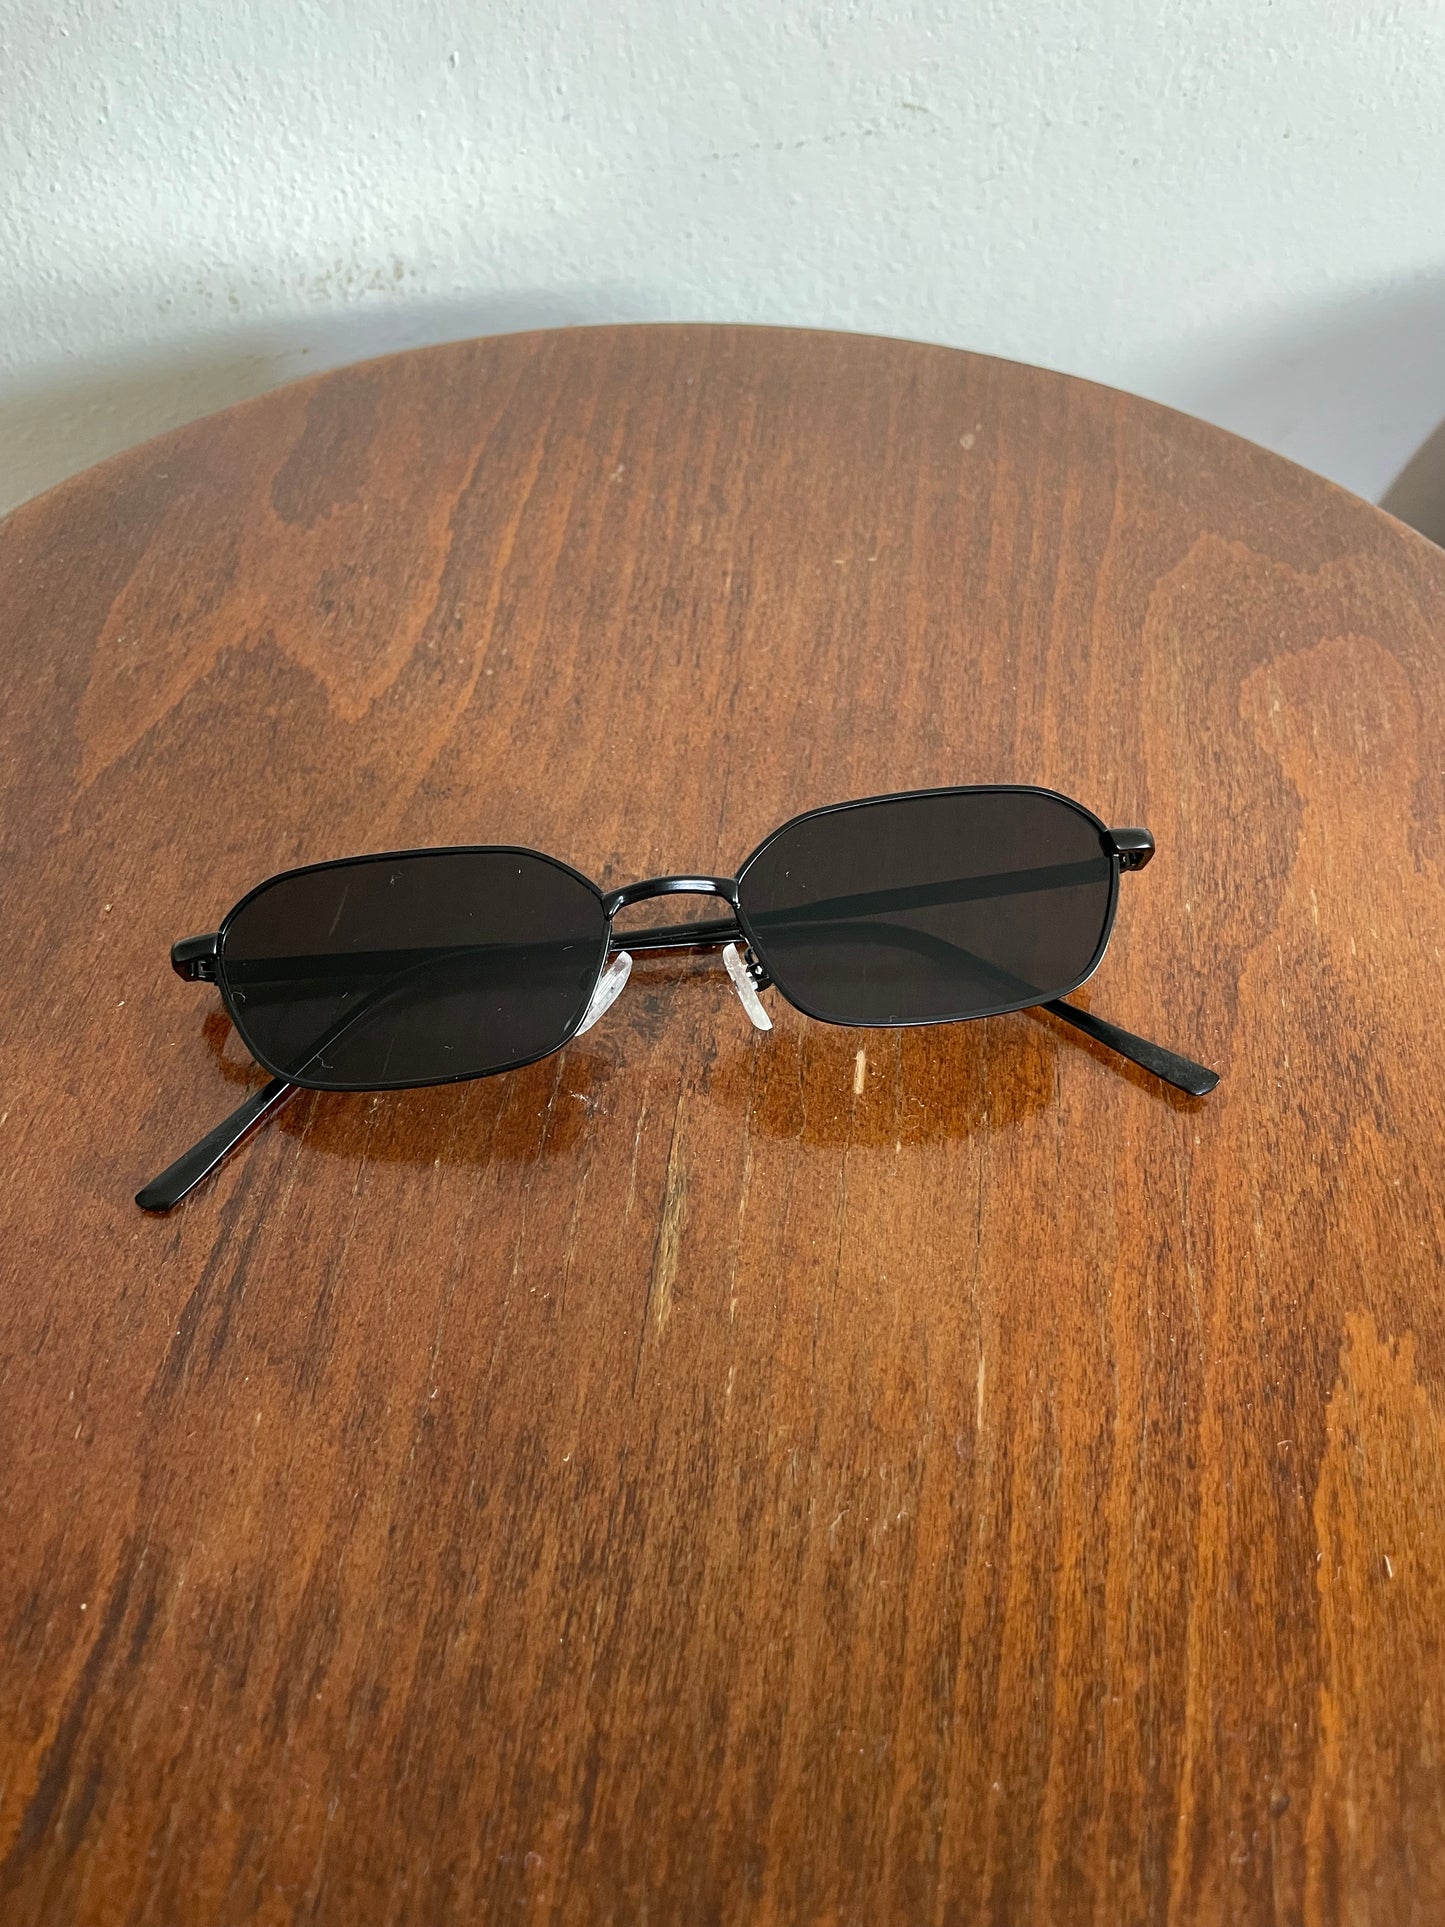 Santiago Sunglasses